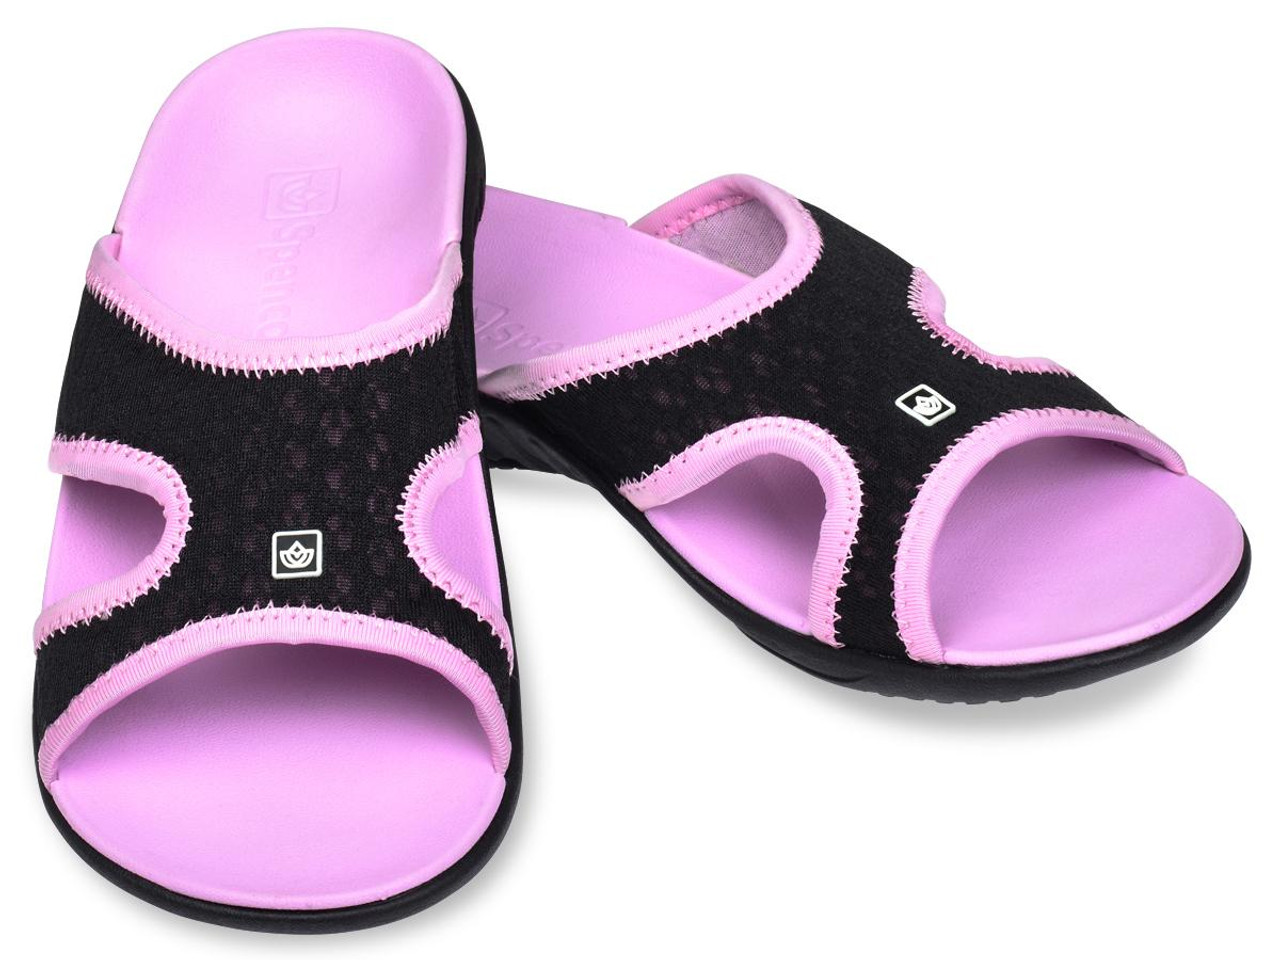 Spenco Kholo Women's Slide Sandals